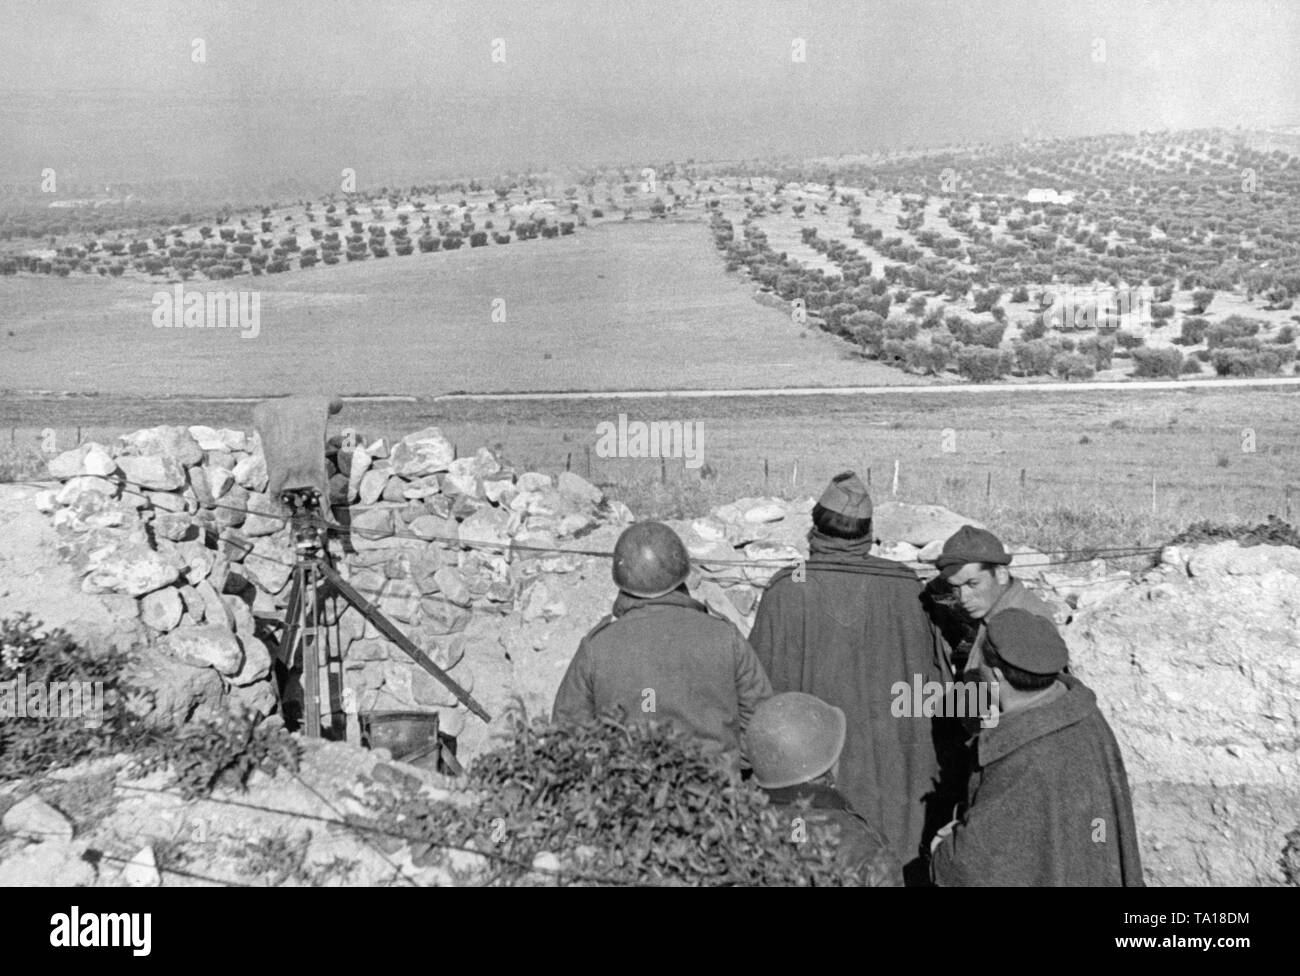 Foto der Italienischen Legionäre (im Fell mit einer Kappe oder Stahl Helm) in einer Beobachtung stehen an der Front im Spanischen Bürgerkrieg. Auf der linken Seite, eine Schere Teleskop. Im Hintergrund, ein Olivenhain. Stockfoto